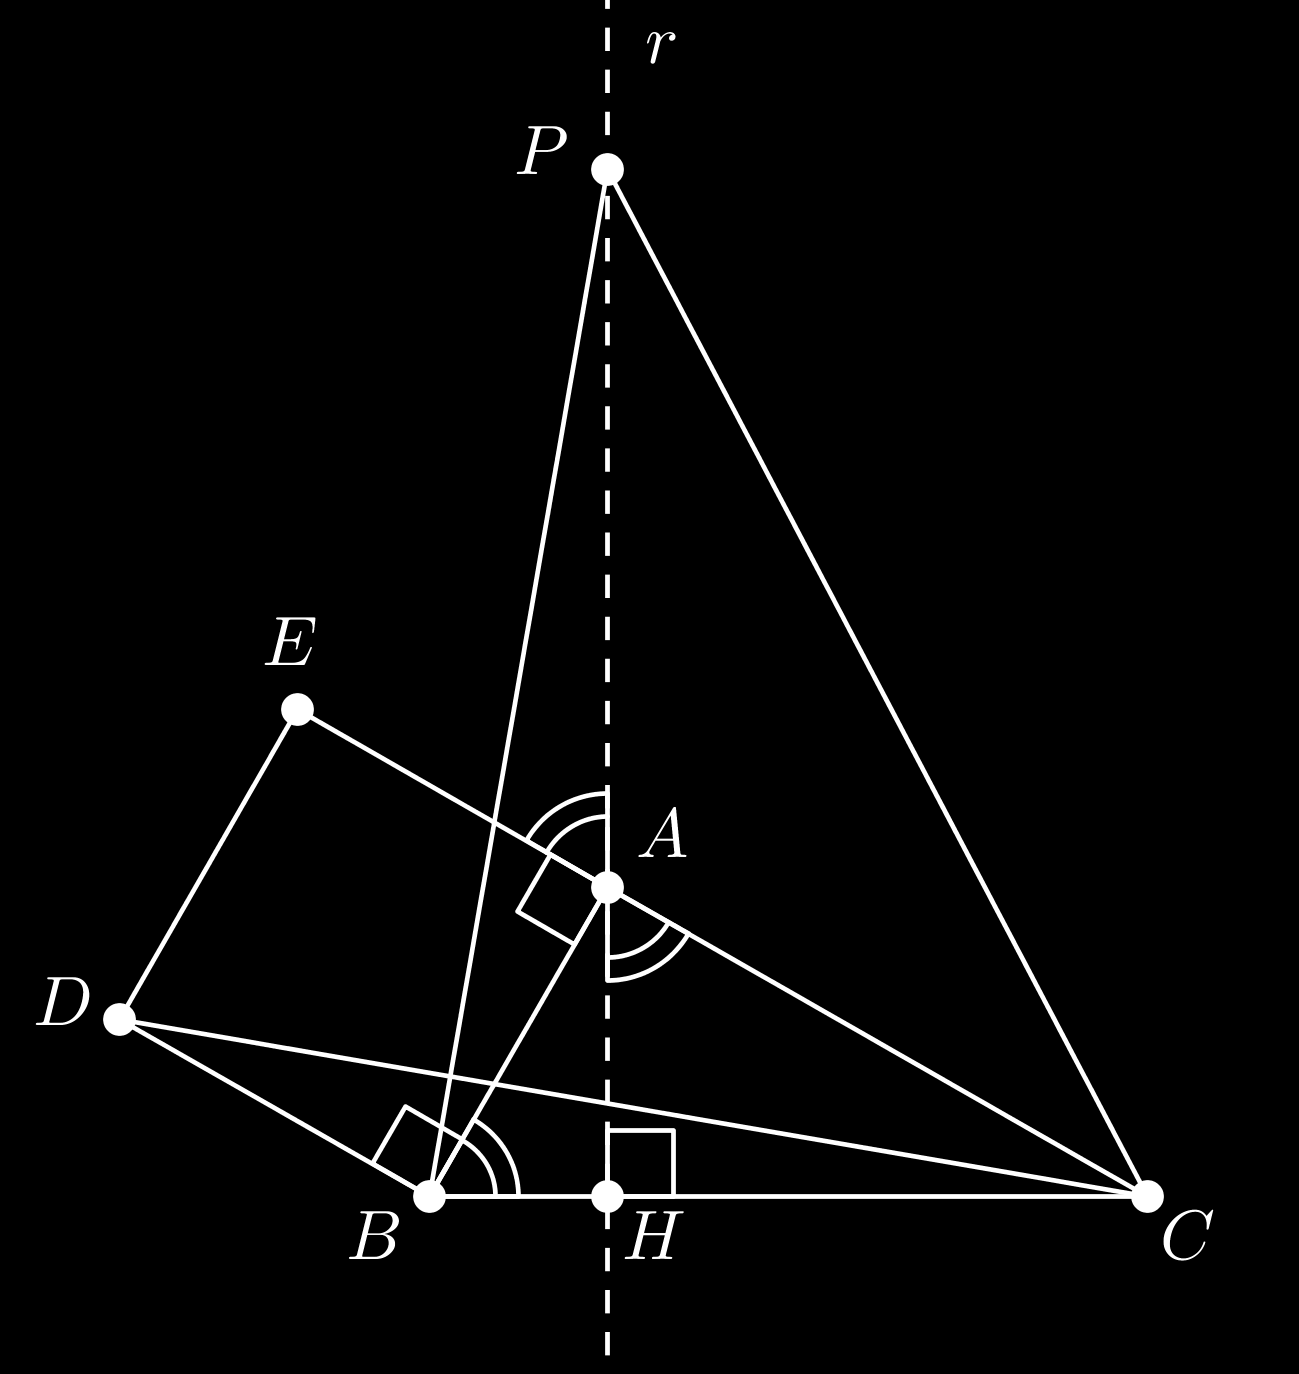 Questão 0 [,00 pts ] Considere um triângulo ABC retângulo em A. Por A, trace uma reta r perpendicular a BC, que encontra BC em H. Em r, marque o ponto P, tal que AP BC, estando A entre P e H.